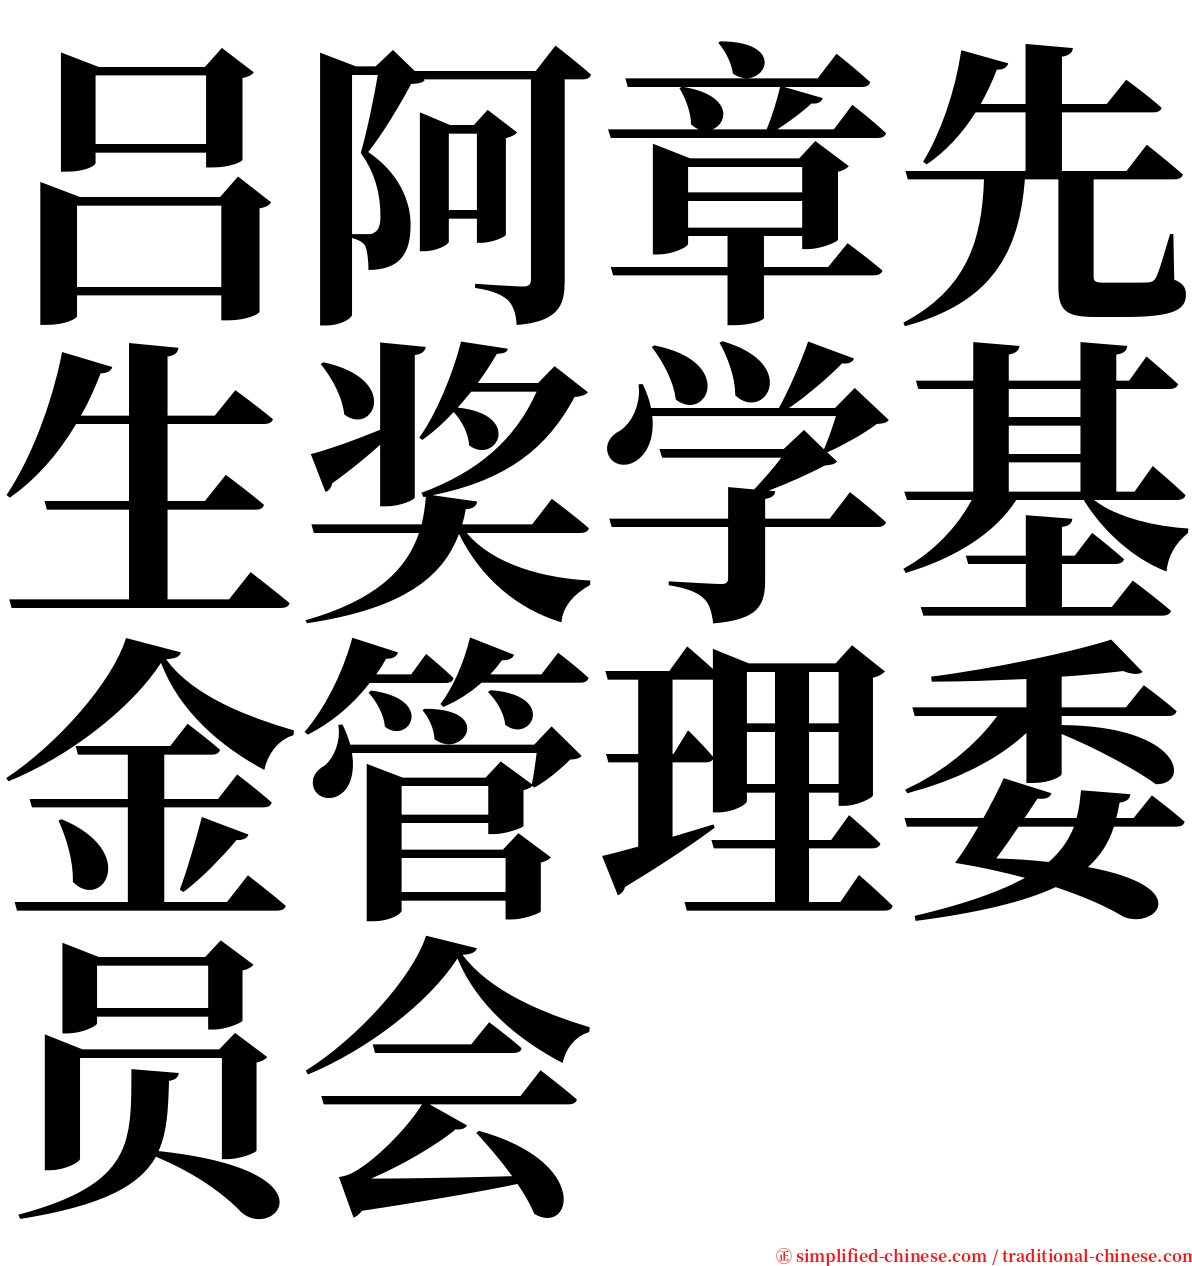 吕阿章先生奖学基金管理委员会 serif font